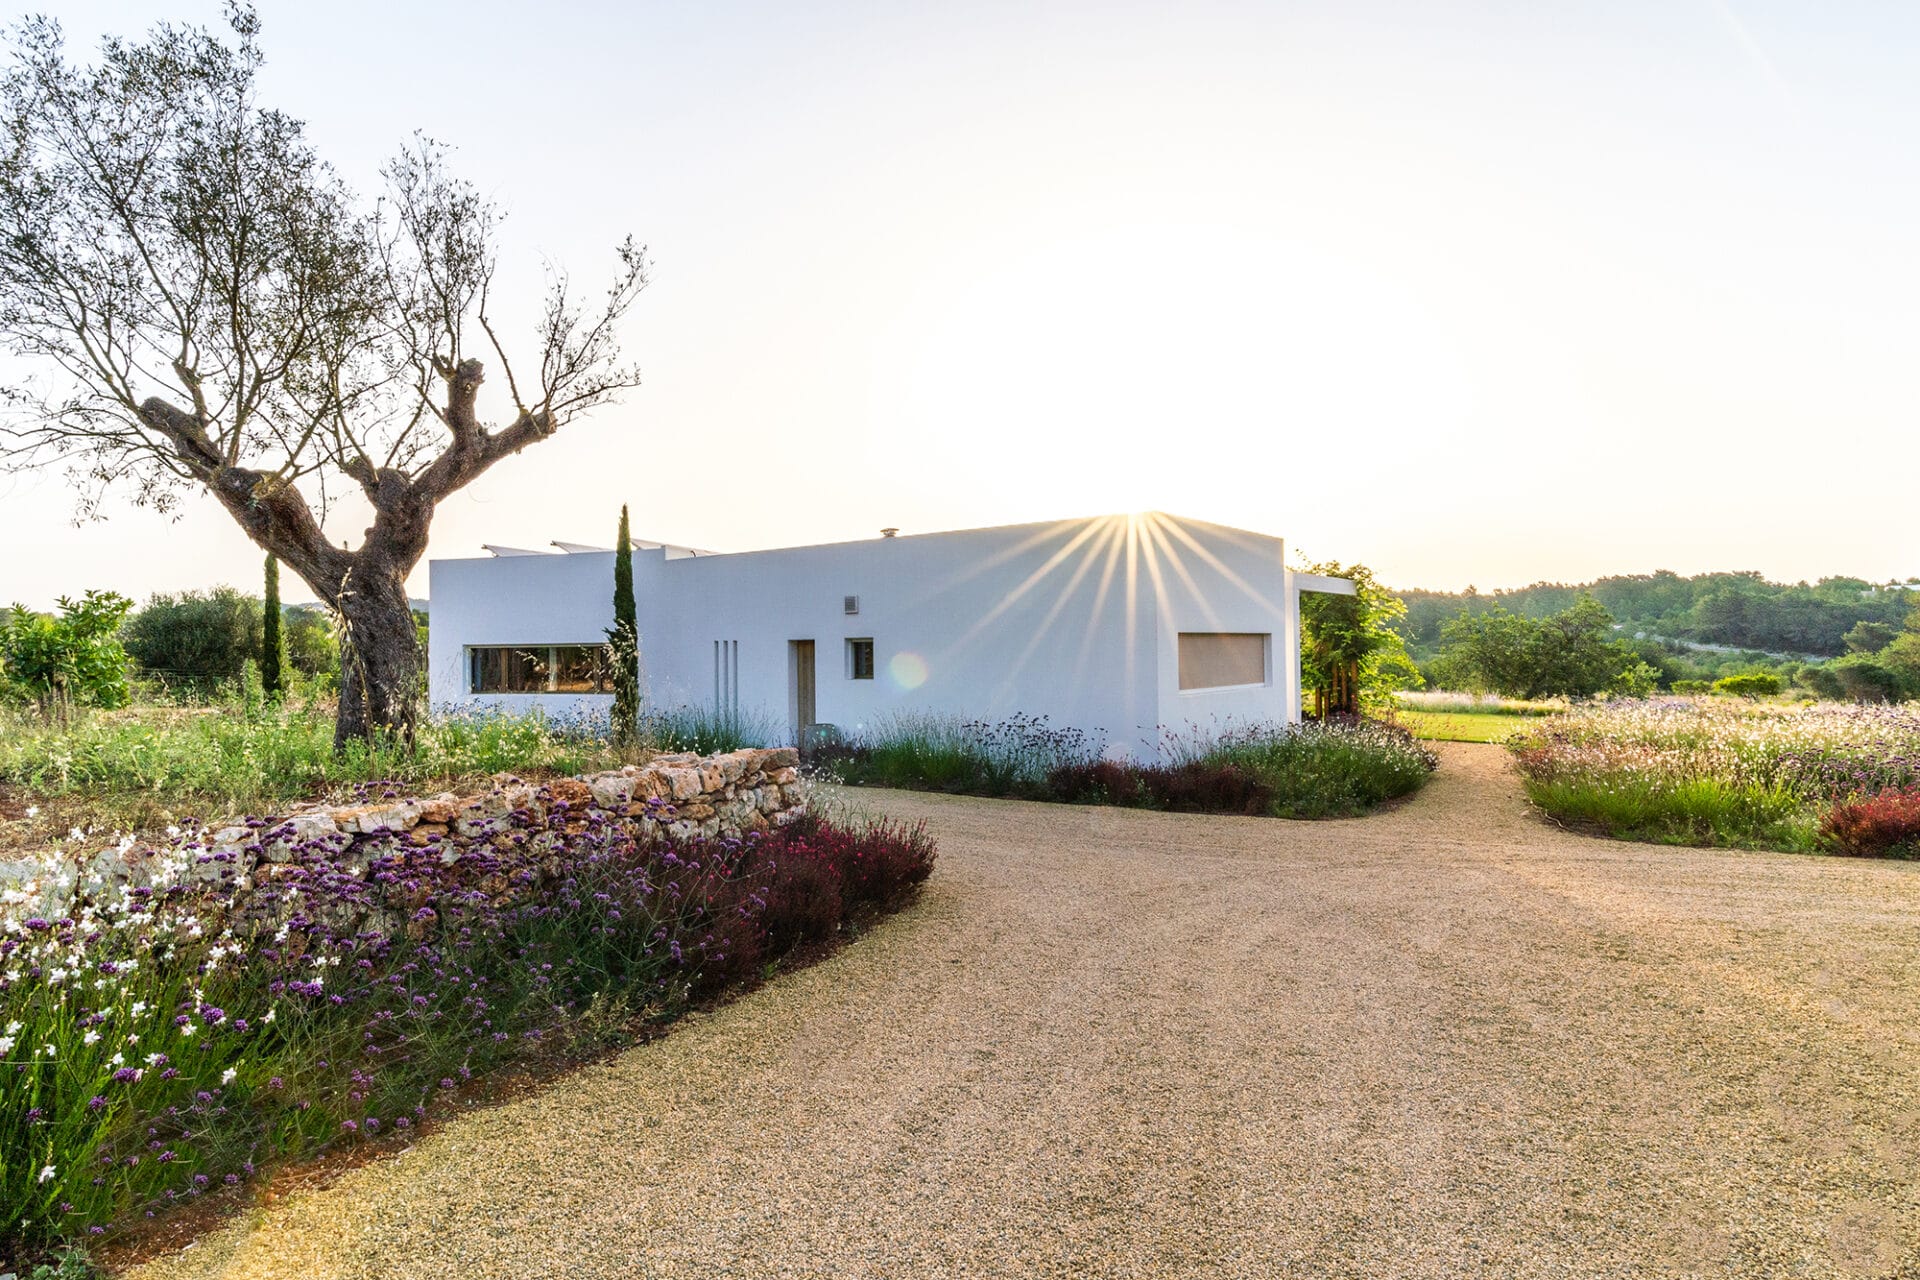 Terravita Ibiza Landscape Design Architecture Can Tanca Zero Carbon House 7